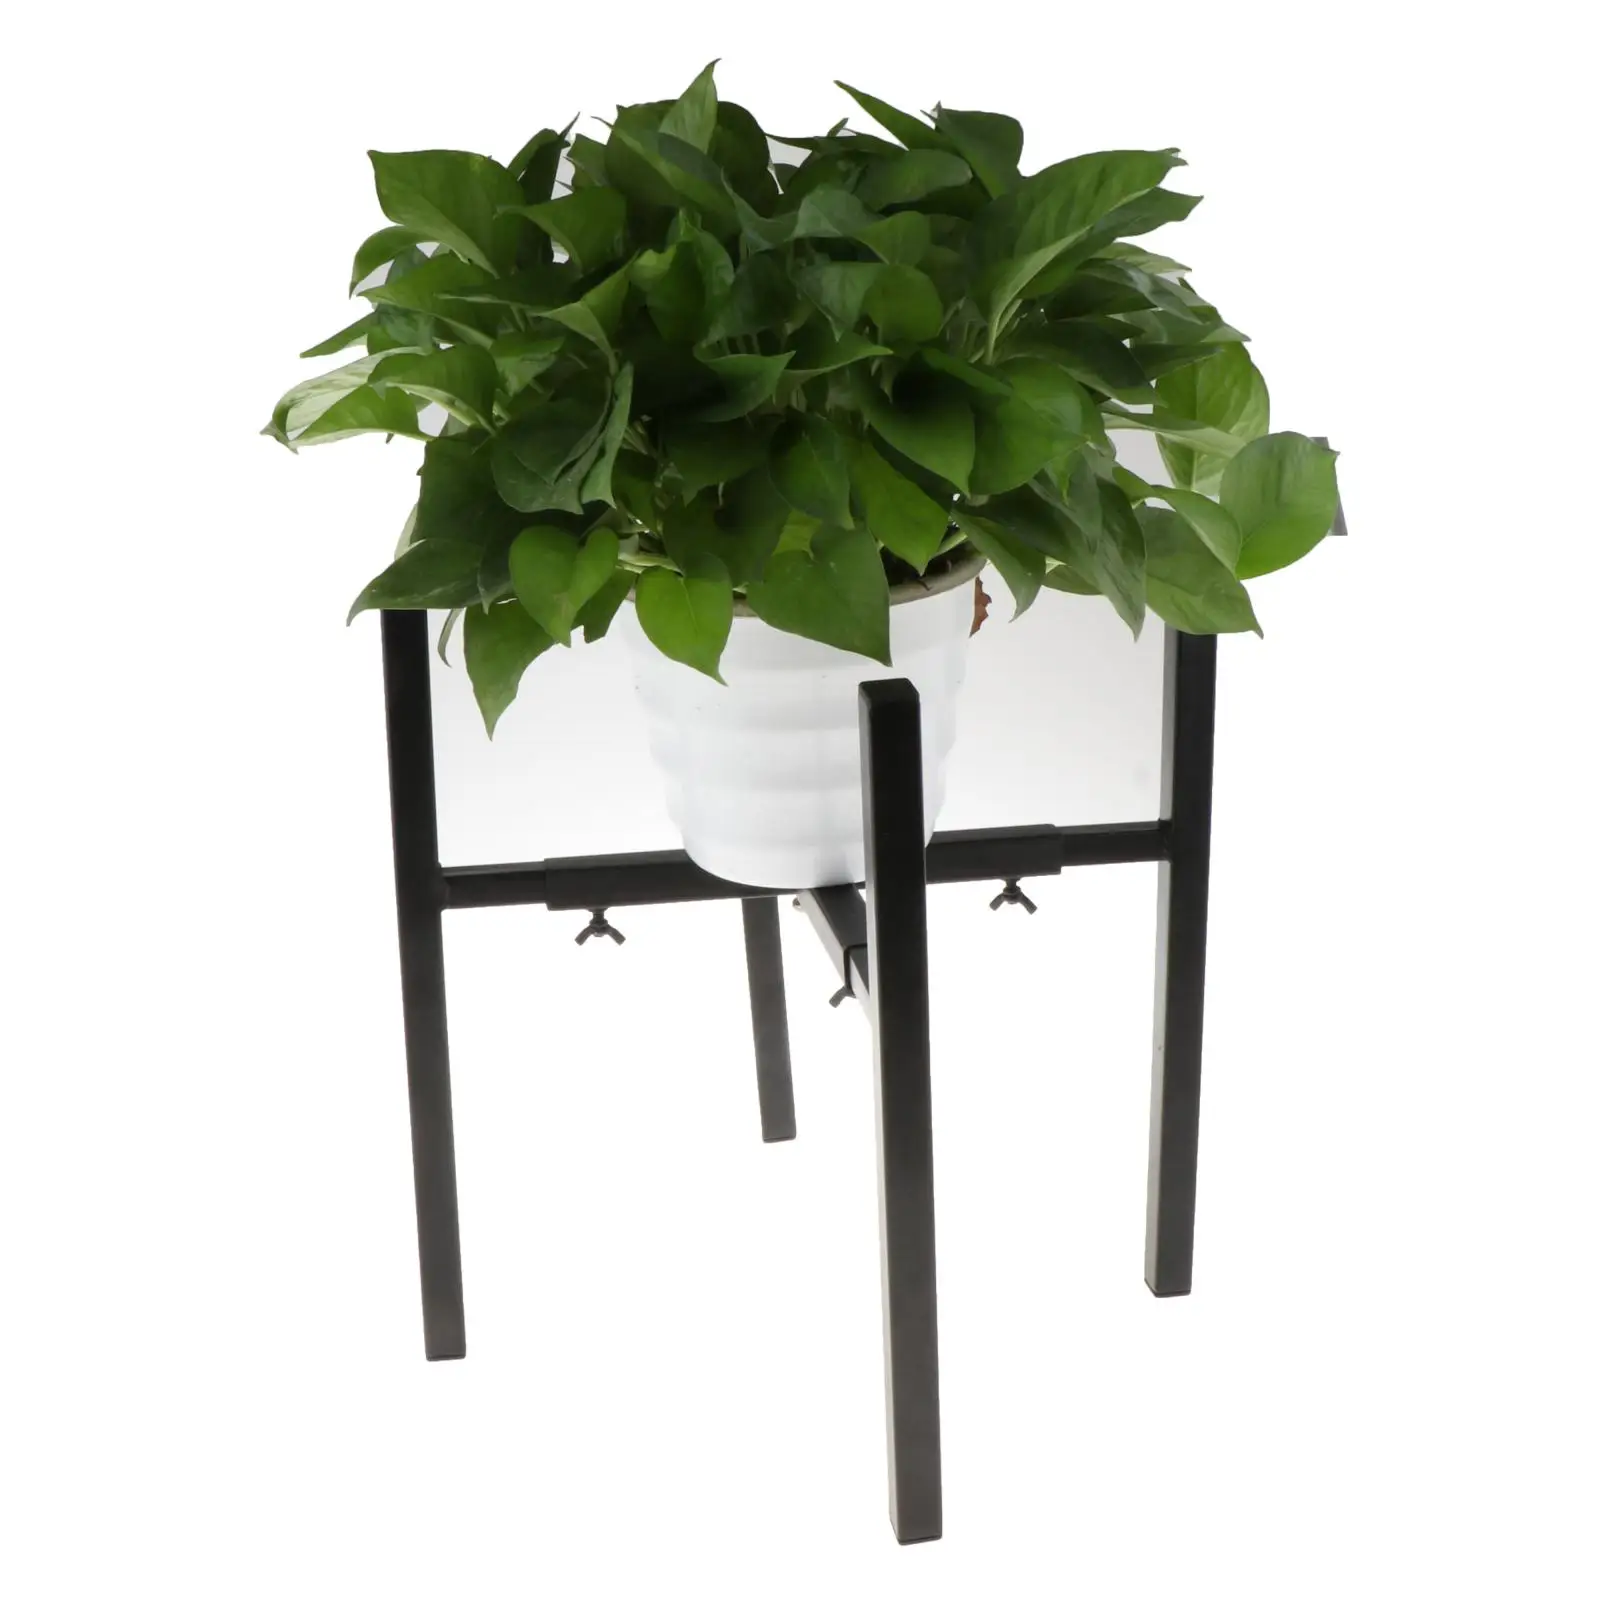 Adjustable Plant Stand, Adjustable Flower Pot Planter Display Rack Garden Room Decorative Plants Bracket